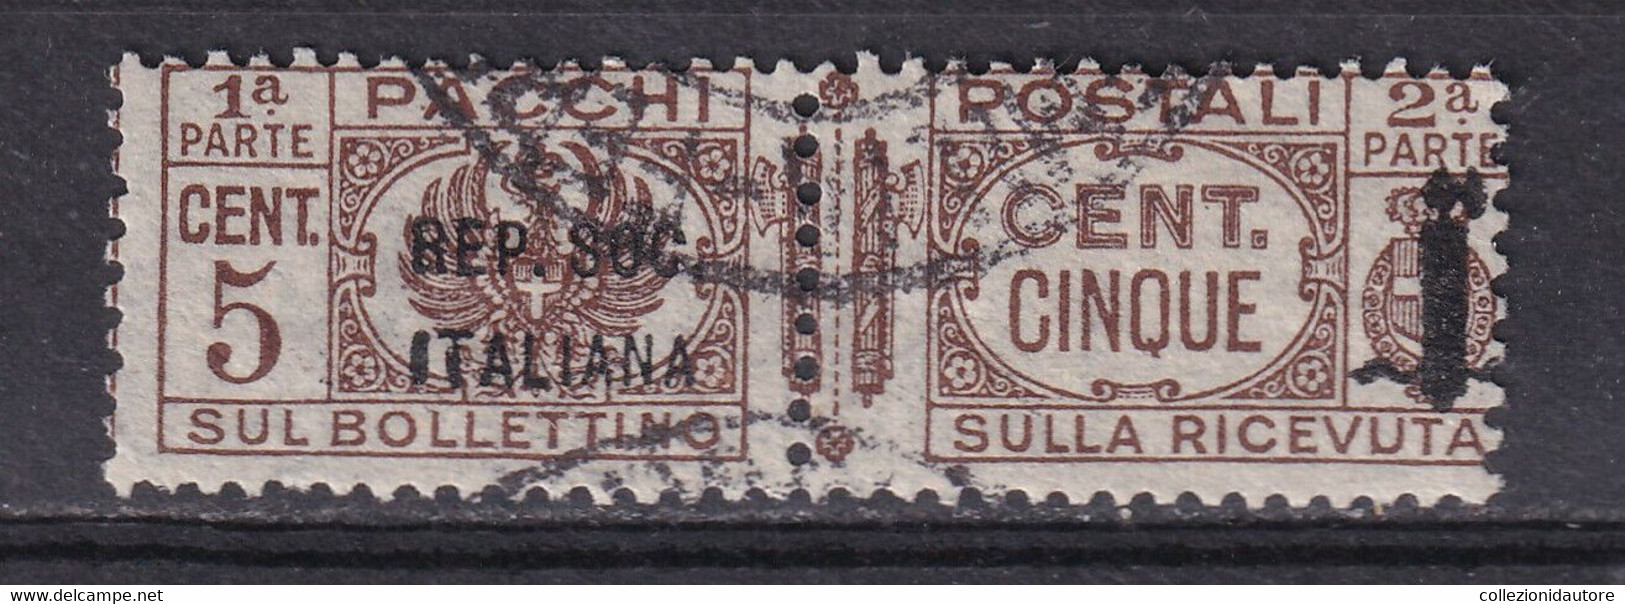 PACCHI POSTALI - CENT. 5 USATO - SOPRASTAMPA REPUBBLICA SOCIALE ITALIANA - Colis-postaux